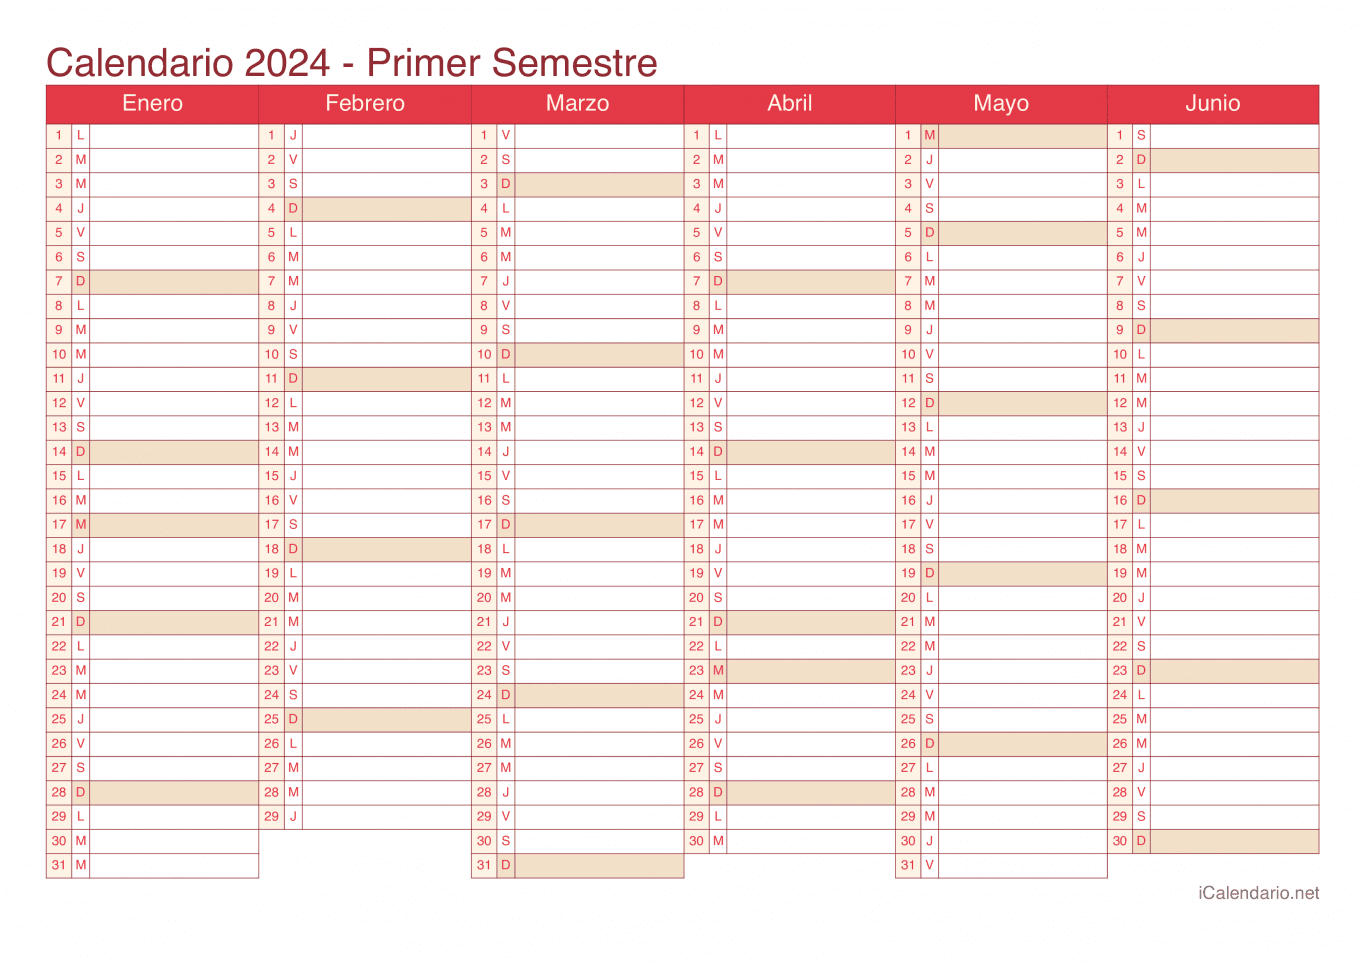 Calendario por semestre 2024 - Cherry